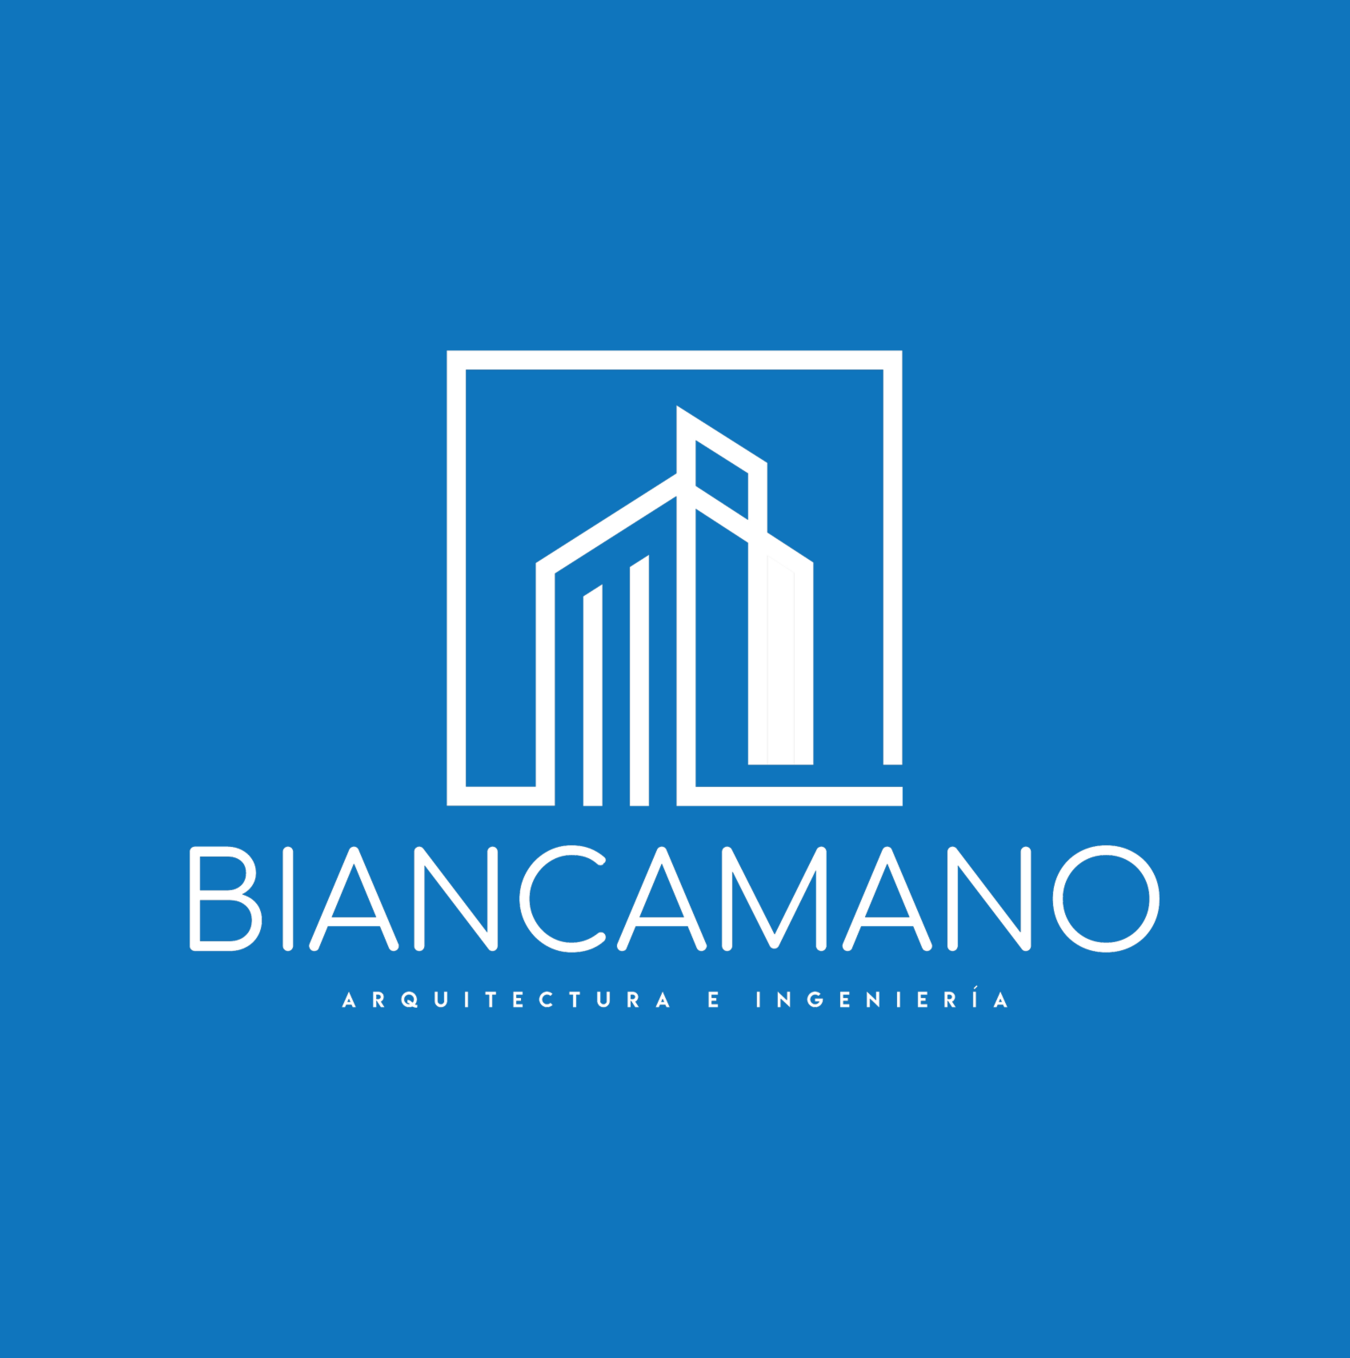 Biancamano